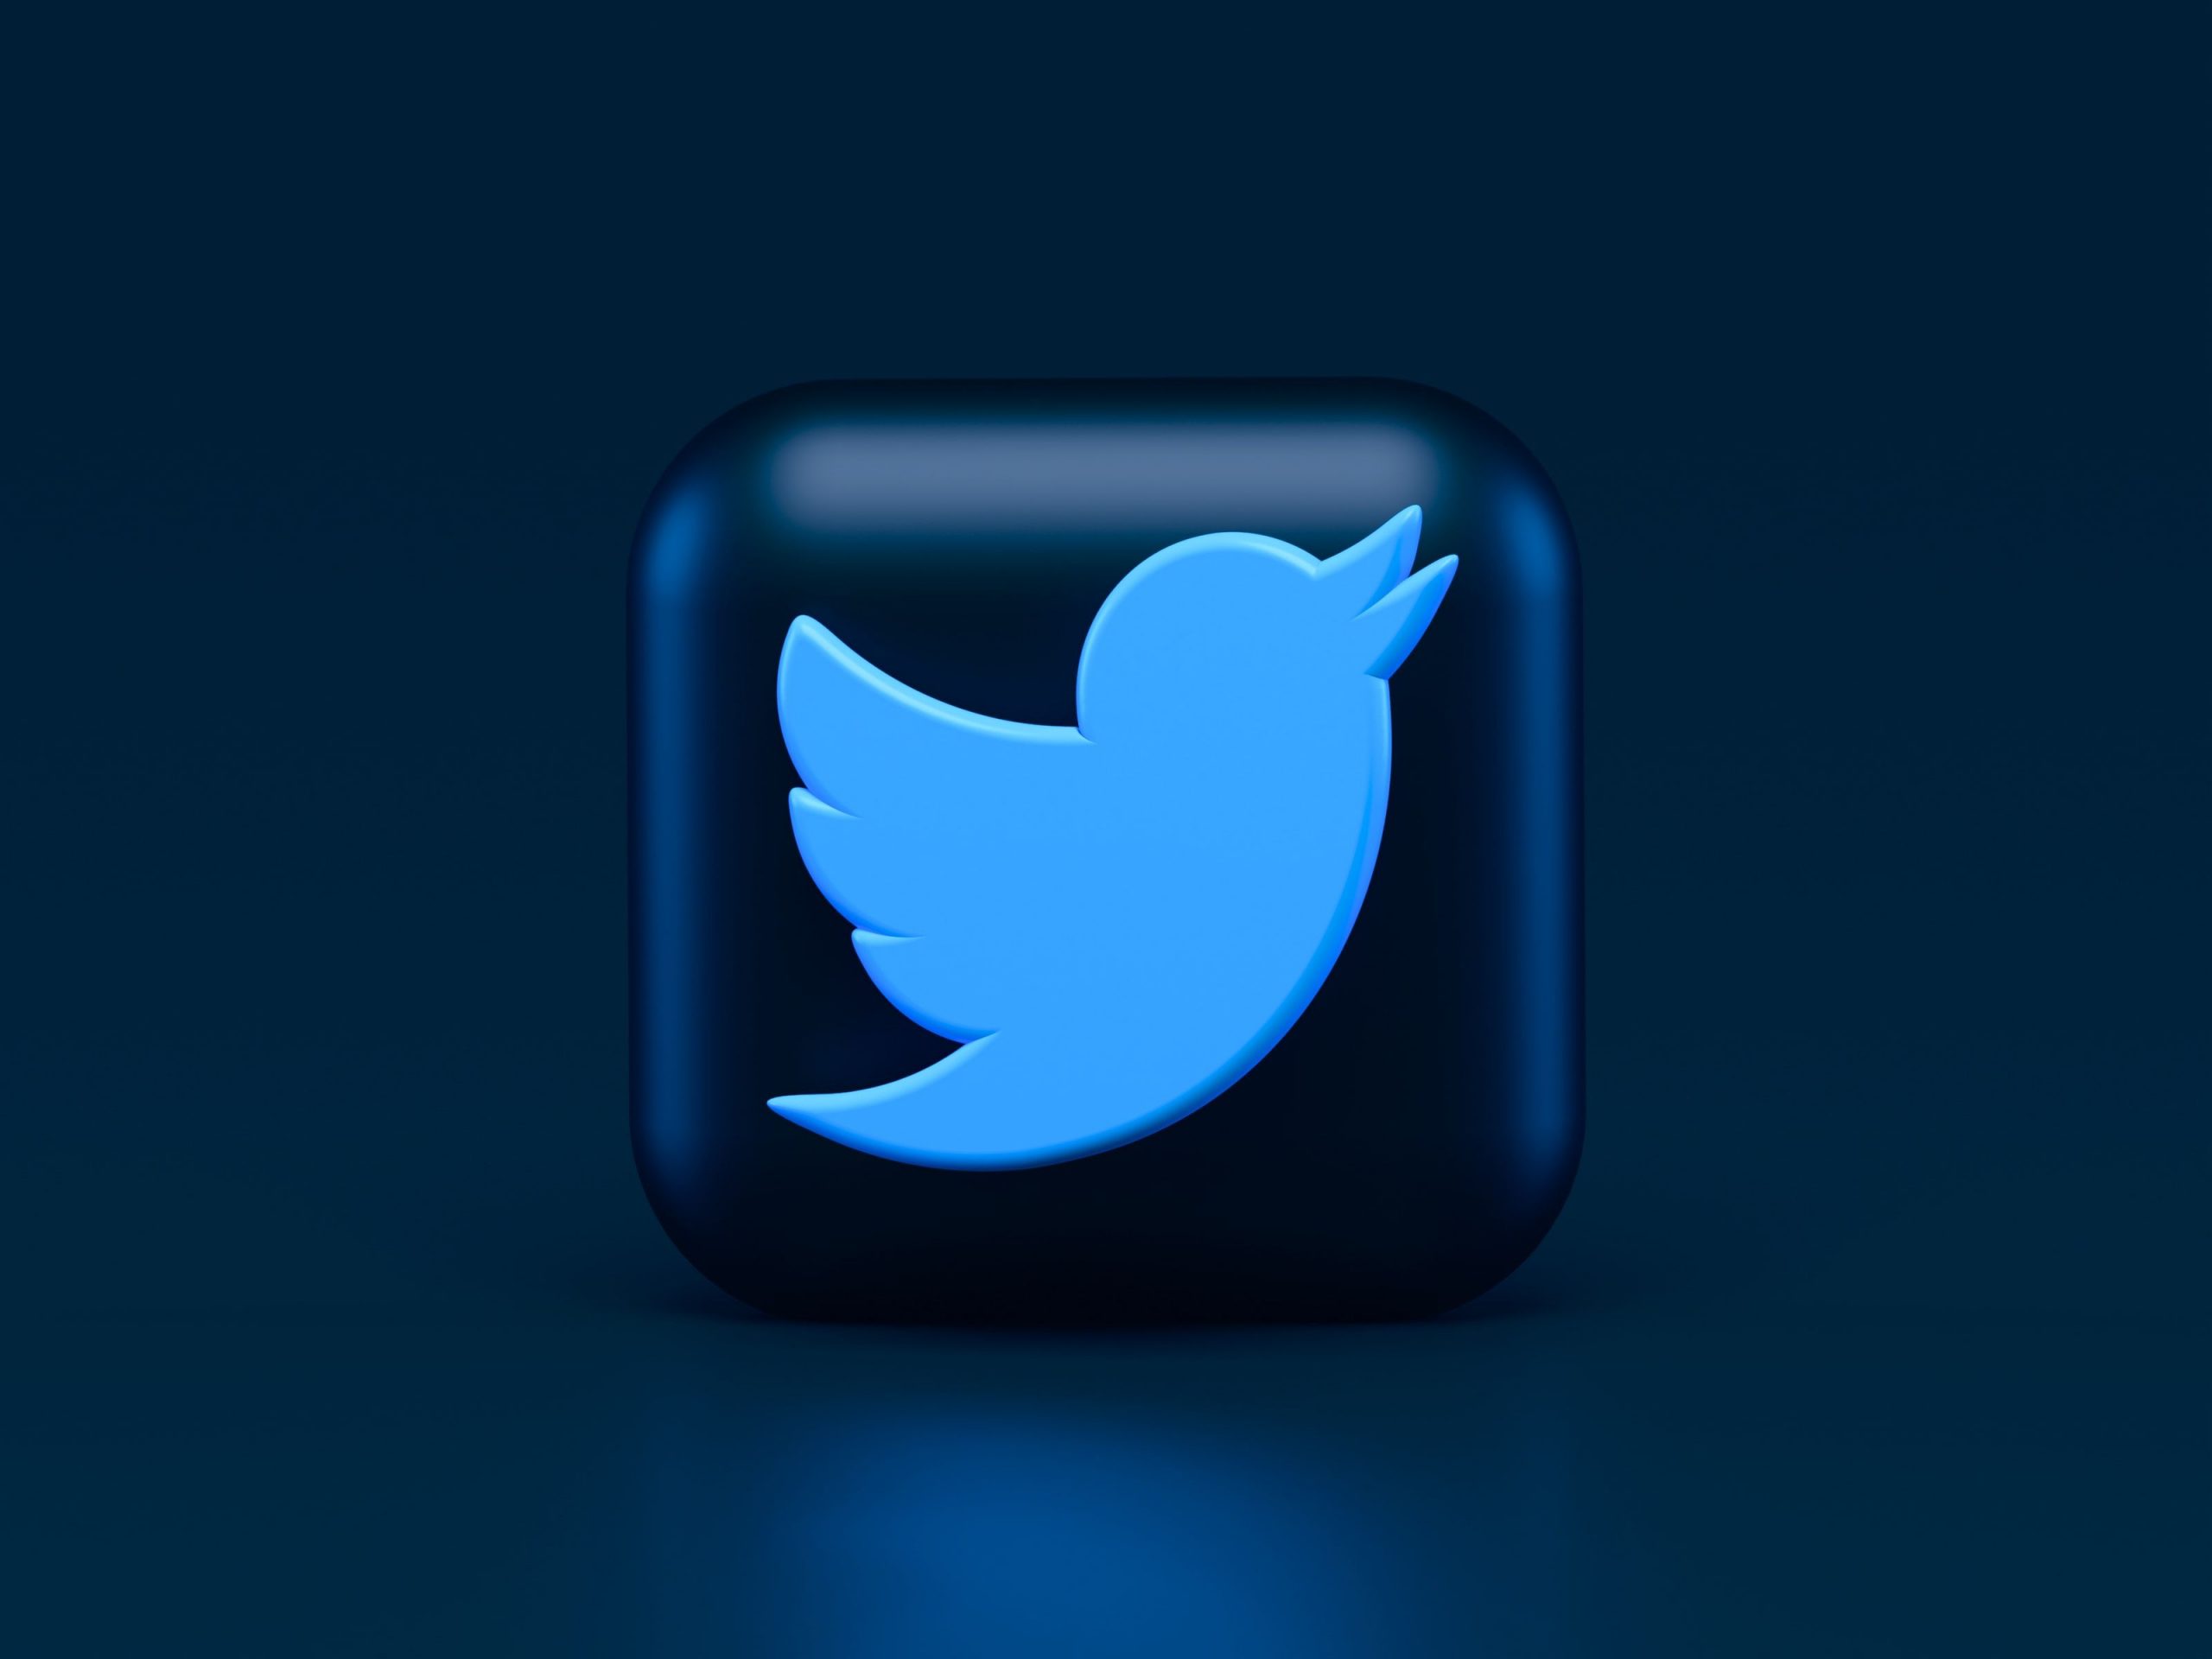 सिर्फ Blue Tick वालों को ही नहीं सभी Twitter यूजर्स को देना होगा चार्ज